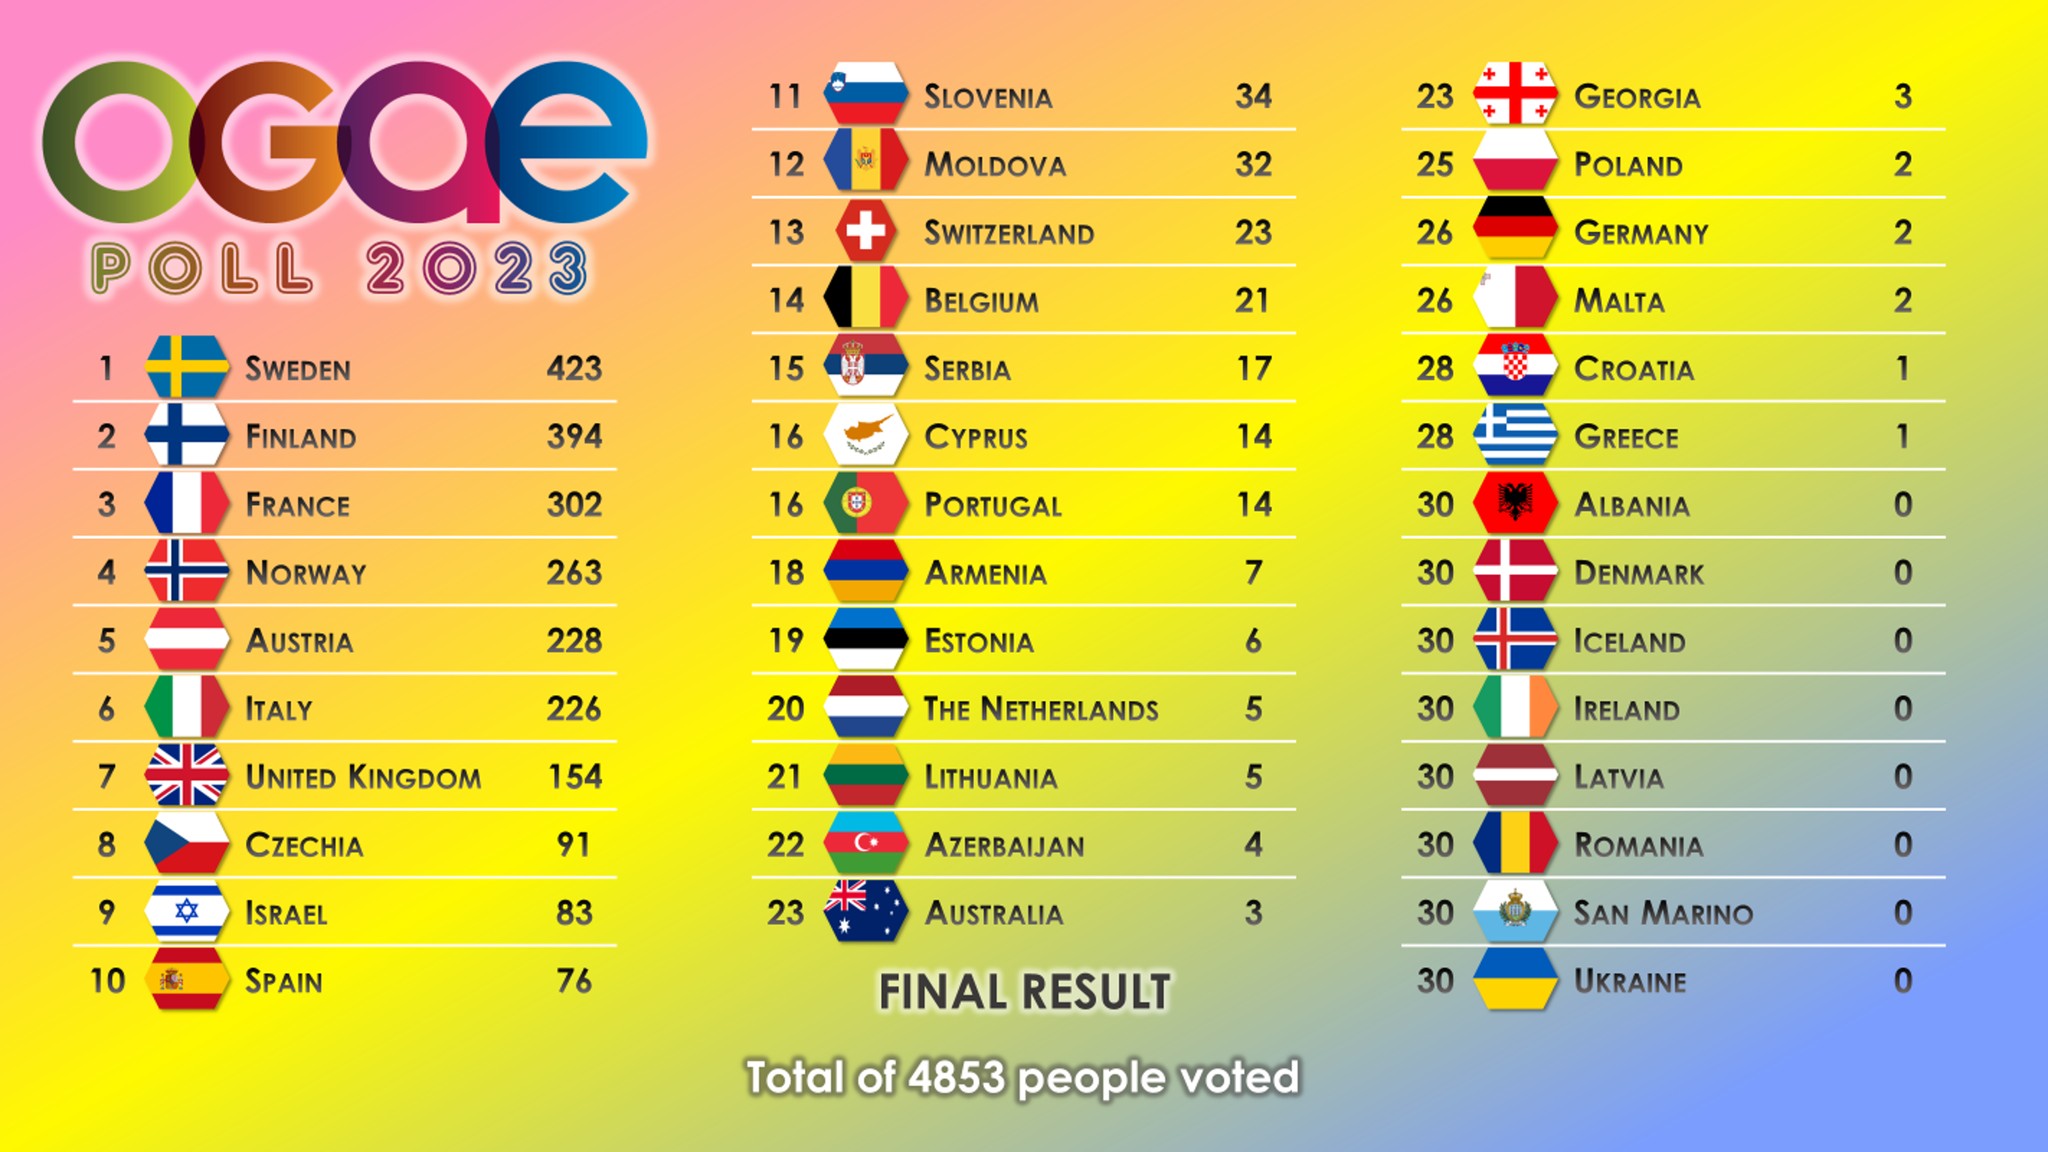 Eurowizja 2023, OGAE Poll 2023, wyniki